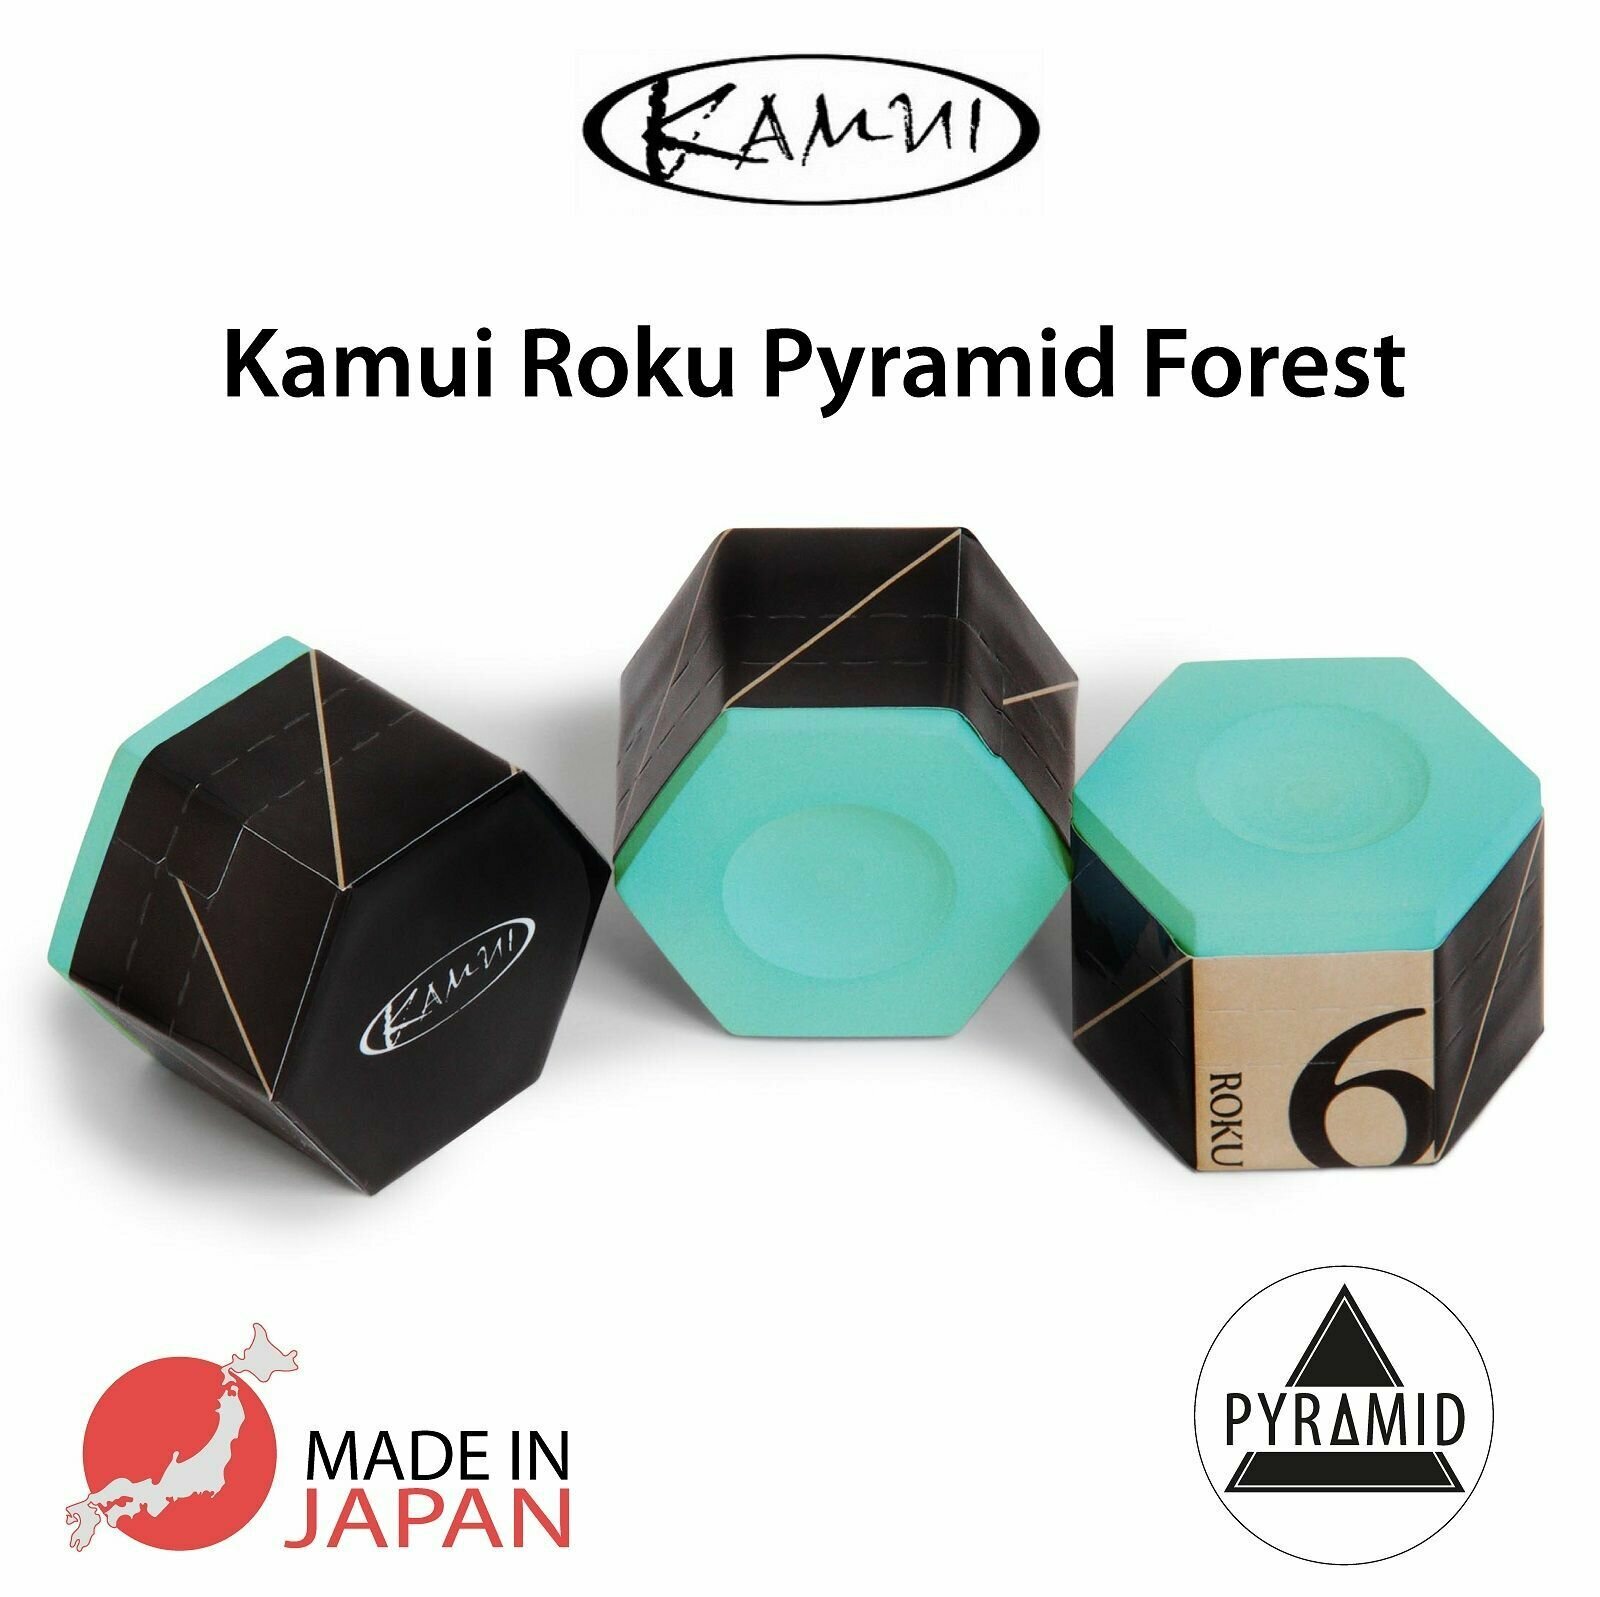 Мел для бильярда Камуи Року Пирамид зеленый / Kamui Roku Pyramid Forest 1 шт.